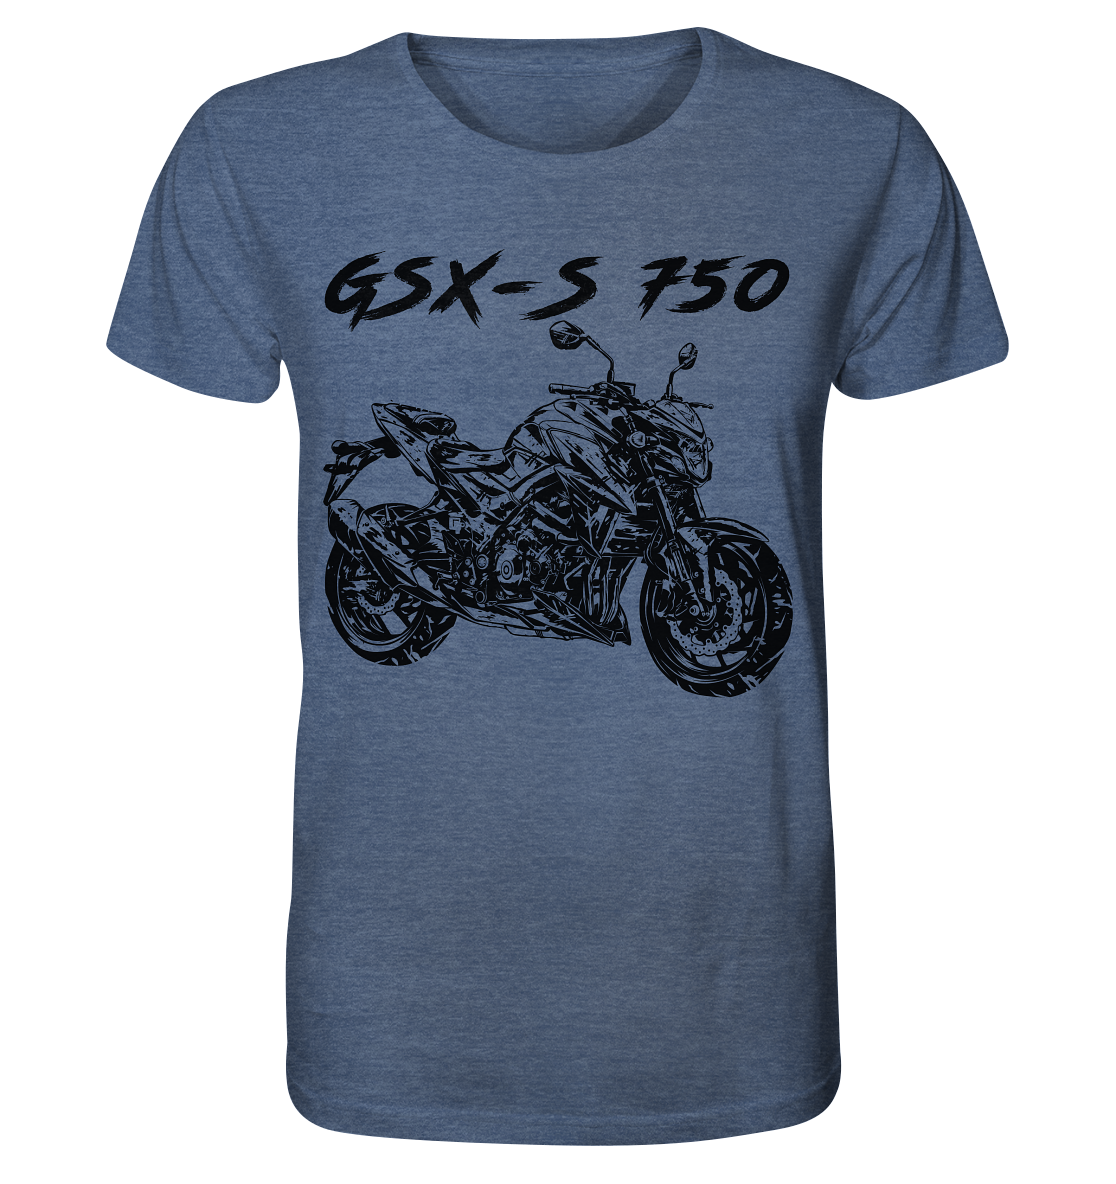 COD_1SGKGSXS750DIRTY - Organic Shirt (meliert)